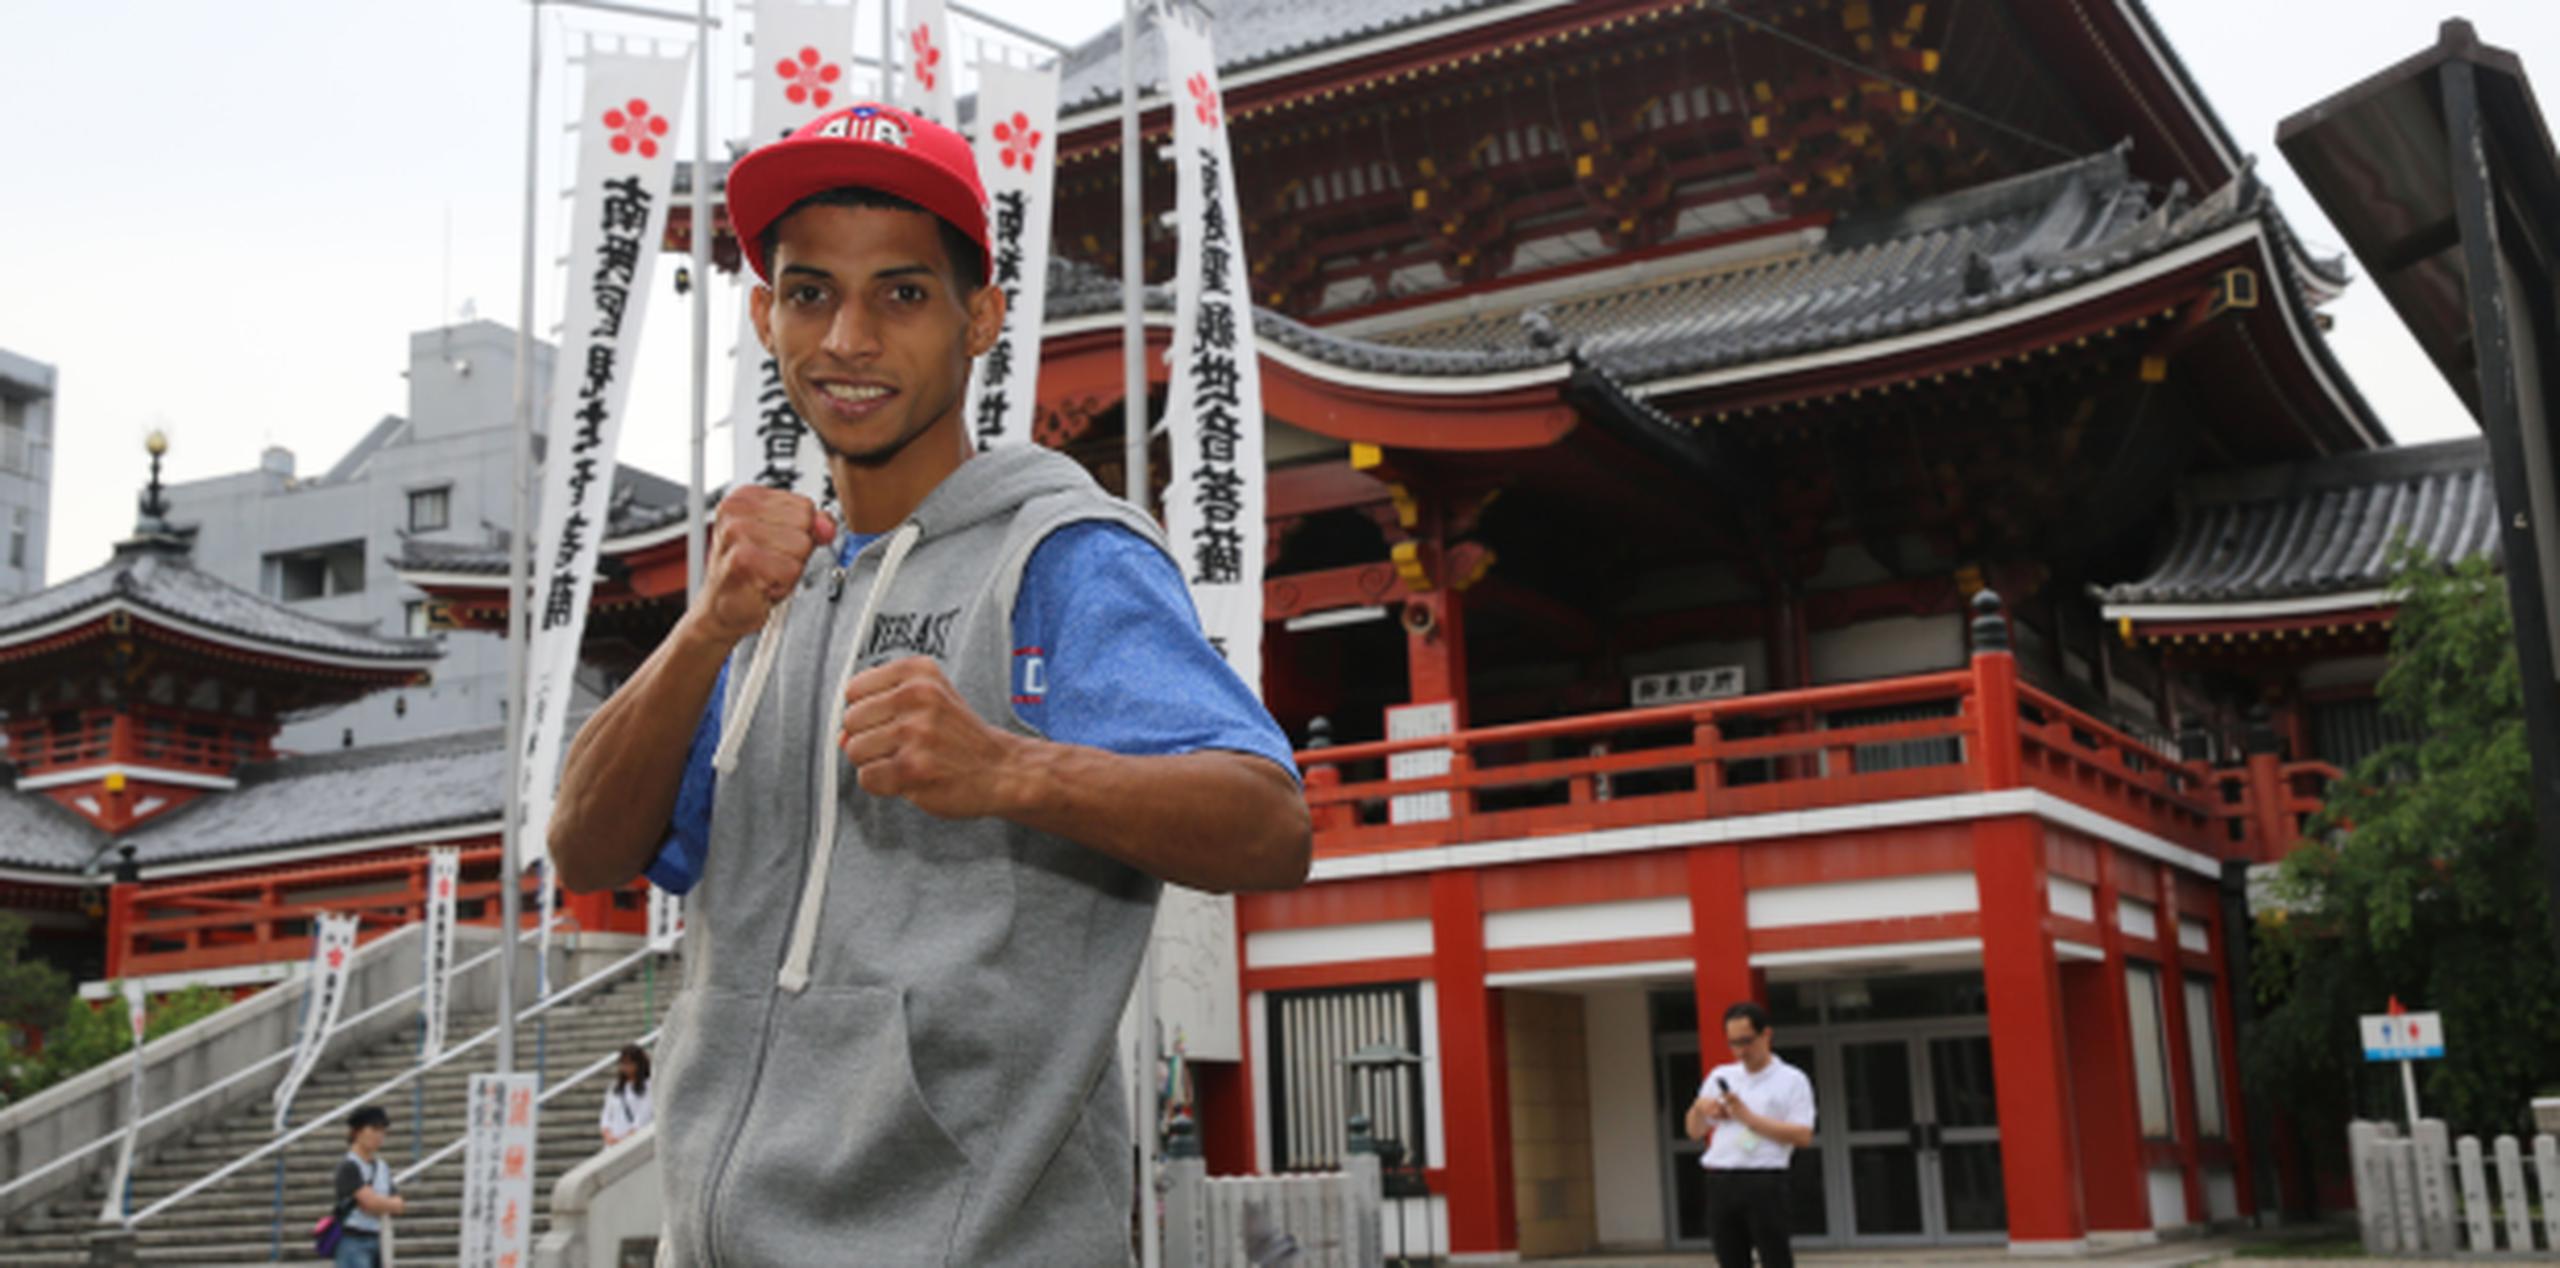 Acosta posa frente al templo budista Osu Kannon, uno de los puntos de referencia turístico en Nagoya, Japón. (Héctor Santos Guía / Miguel Cotto LLC)